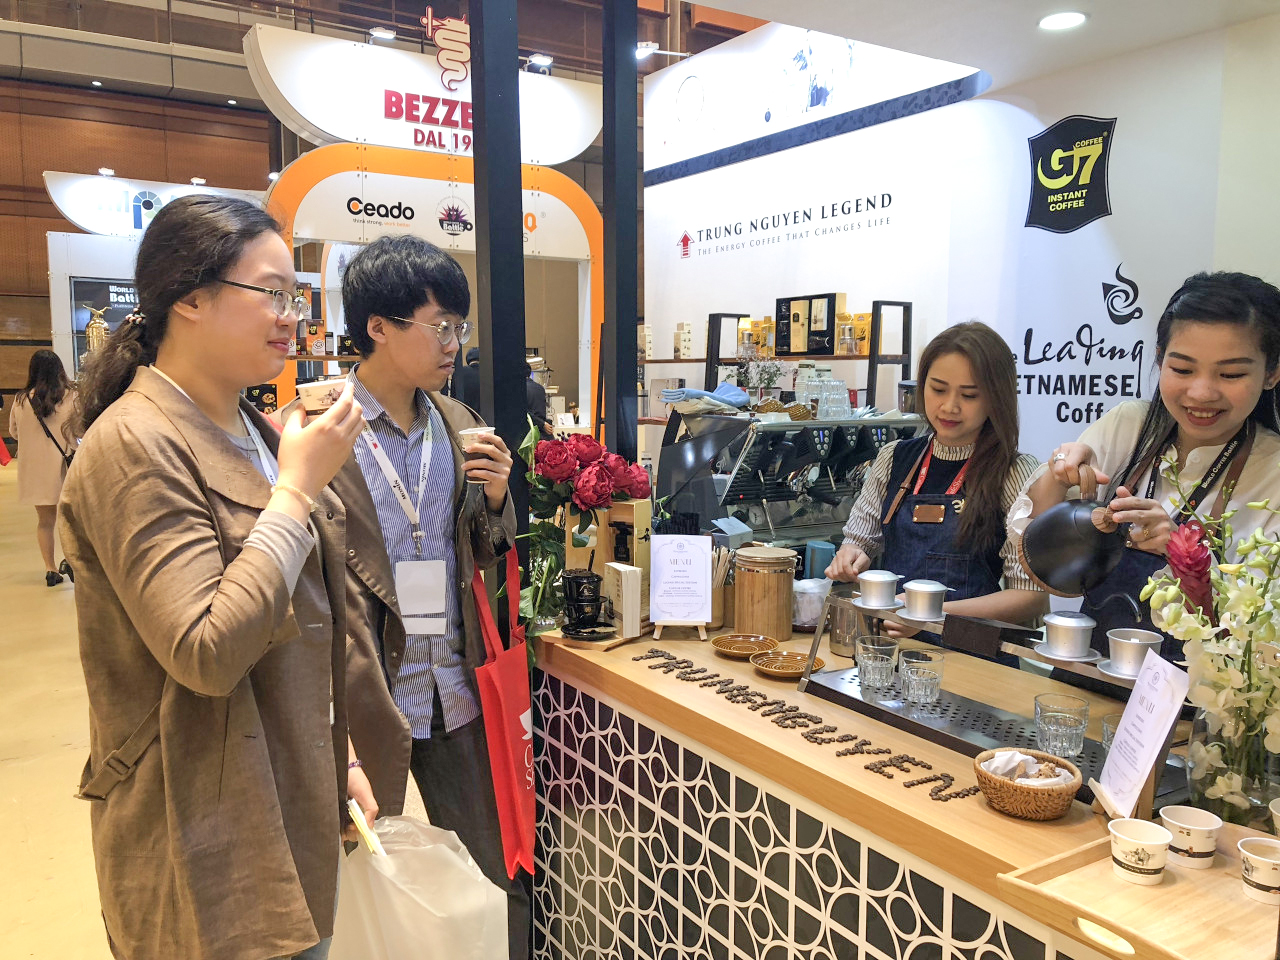 Cà phê G7, Trung Nguyên, Trung Nguyên Legend đã hiện diện và được yêu thích tại Hàn Quốc hơn 1 thập kỷ.